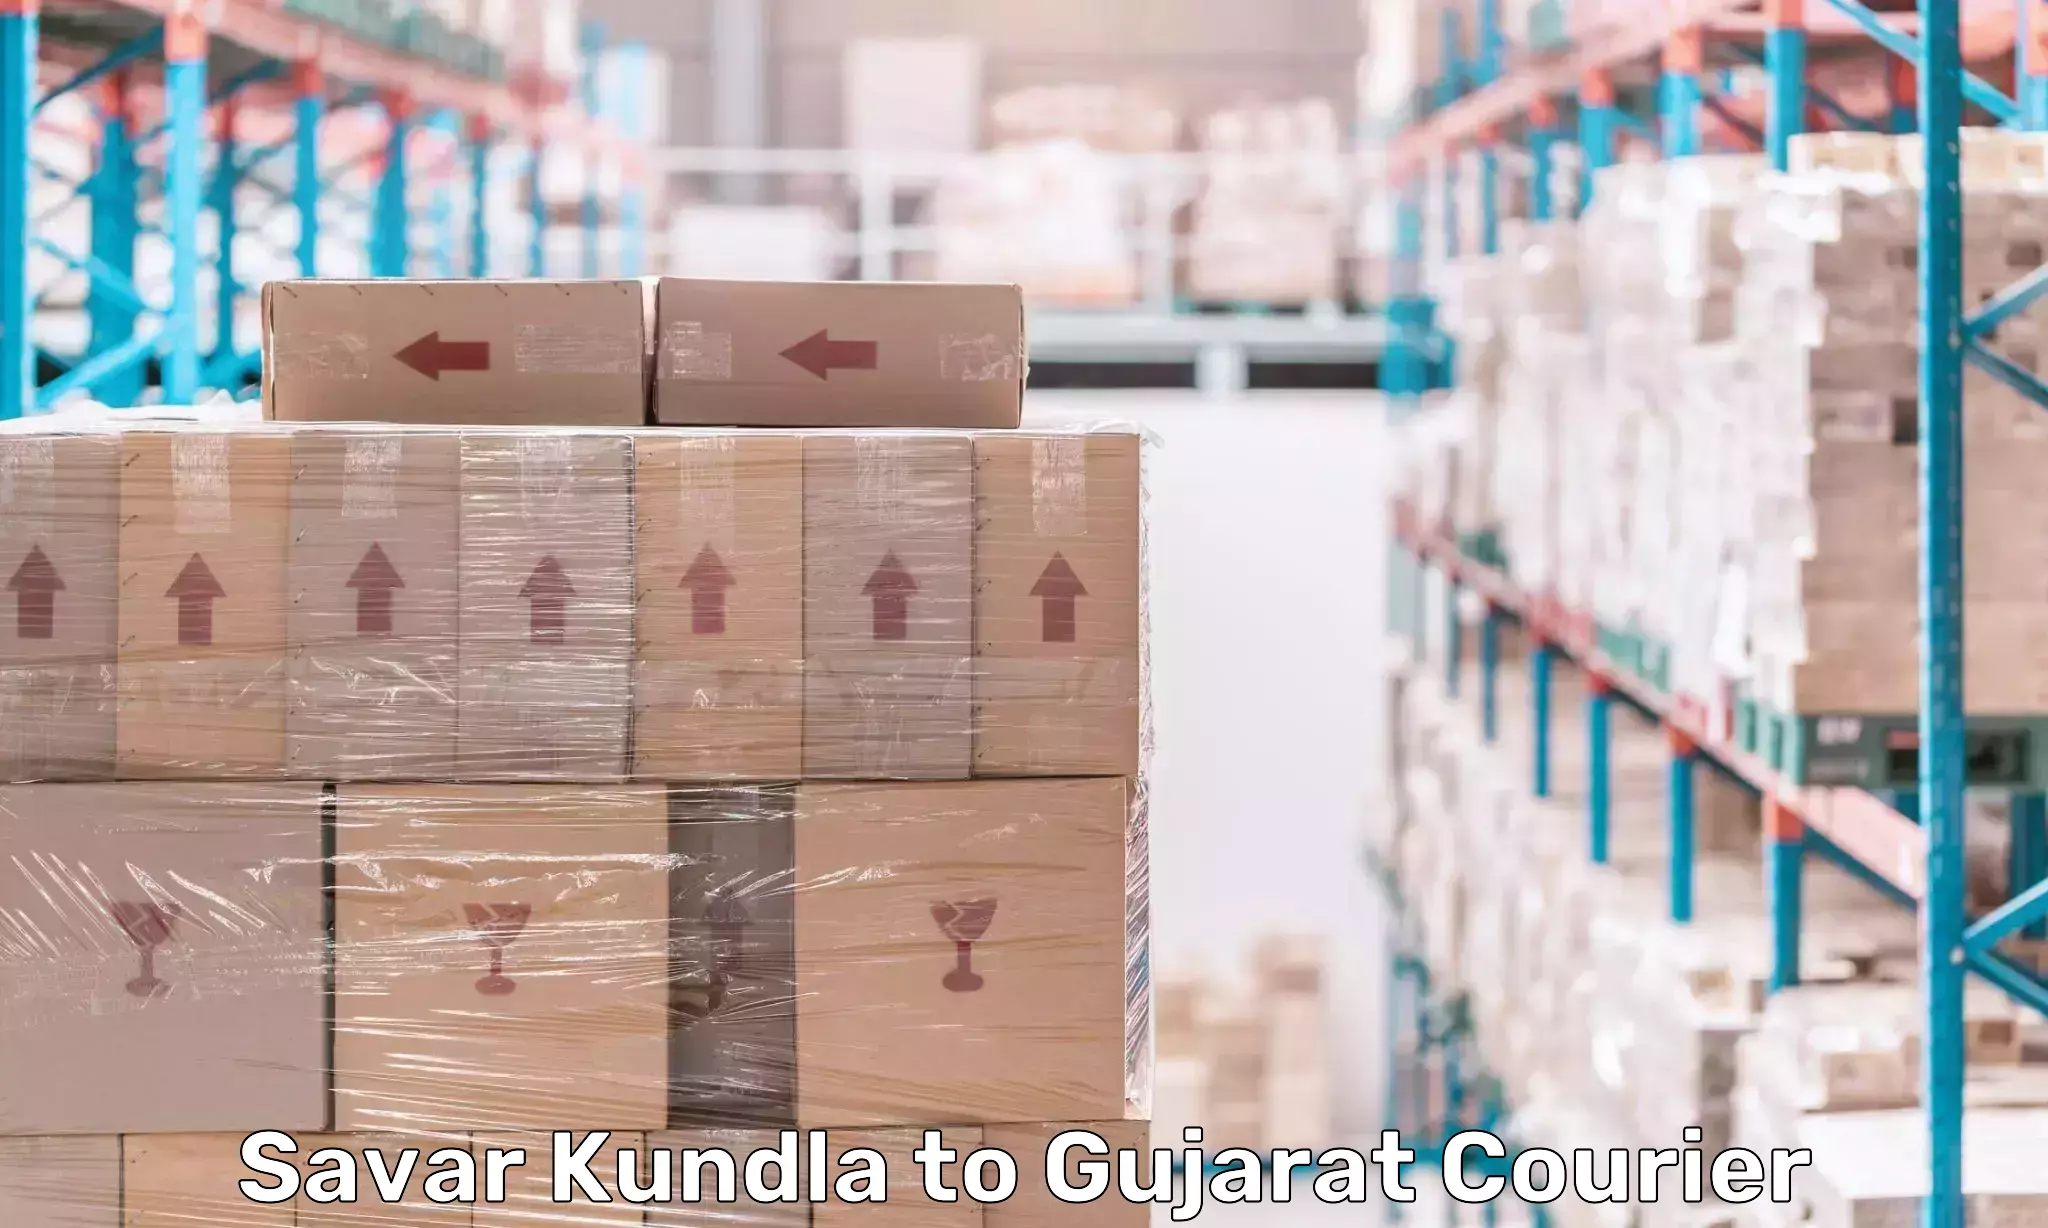 Global parcel delivery Savar Kundla to Manavadar